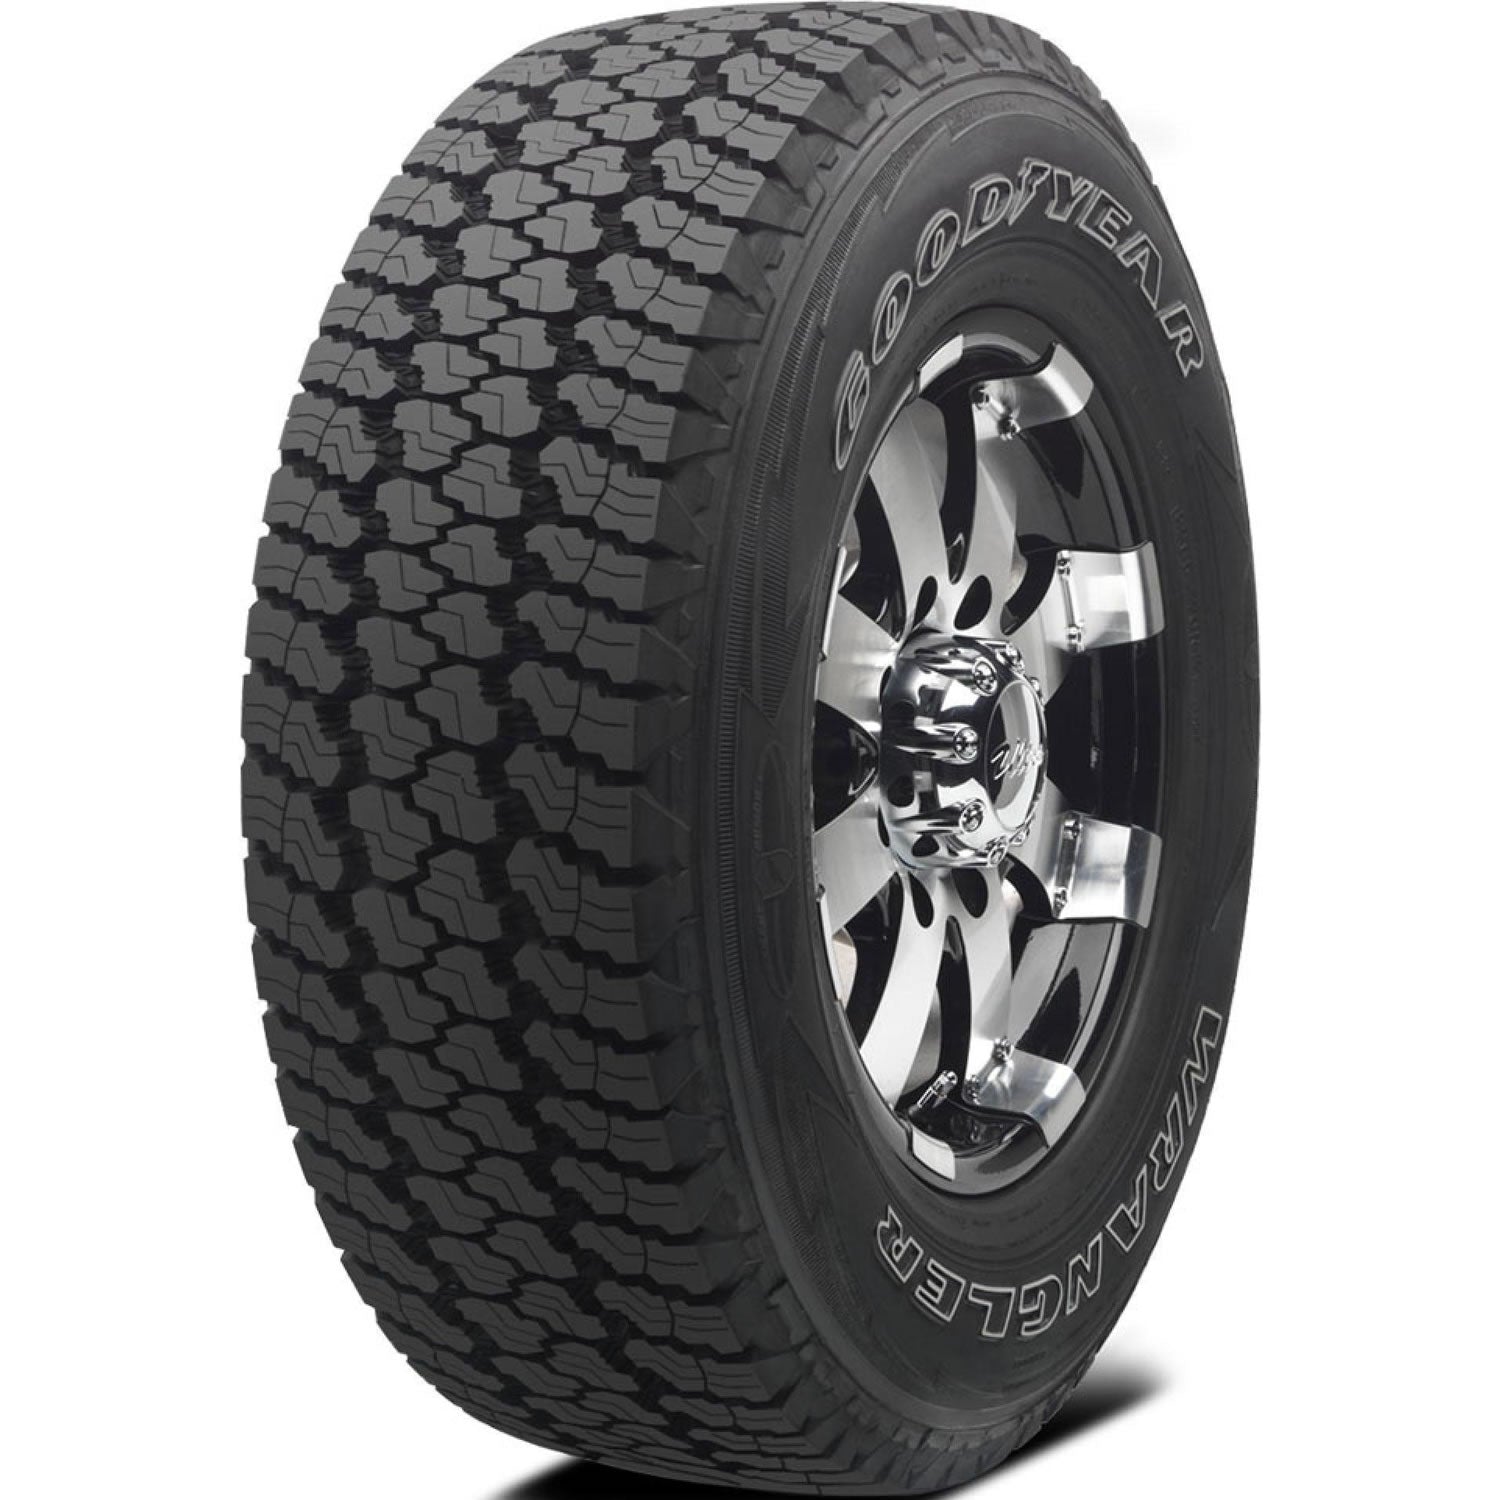 GOODYEAR WRANGLER SILENT ARMOR P275/60R20 (33X11R 20) Tires